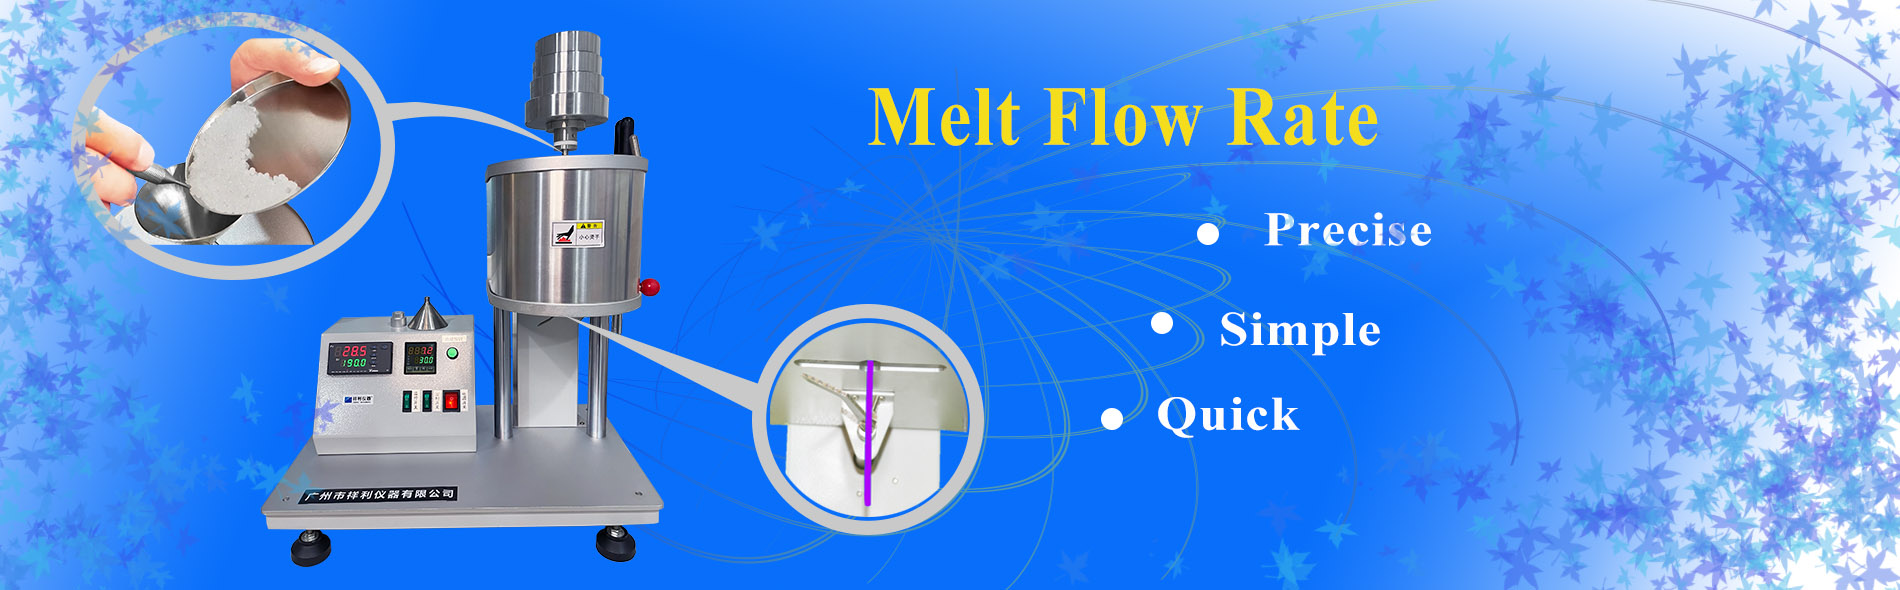 Melt flow rate instruments